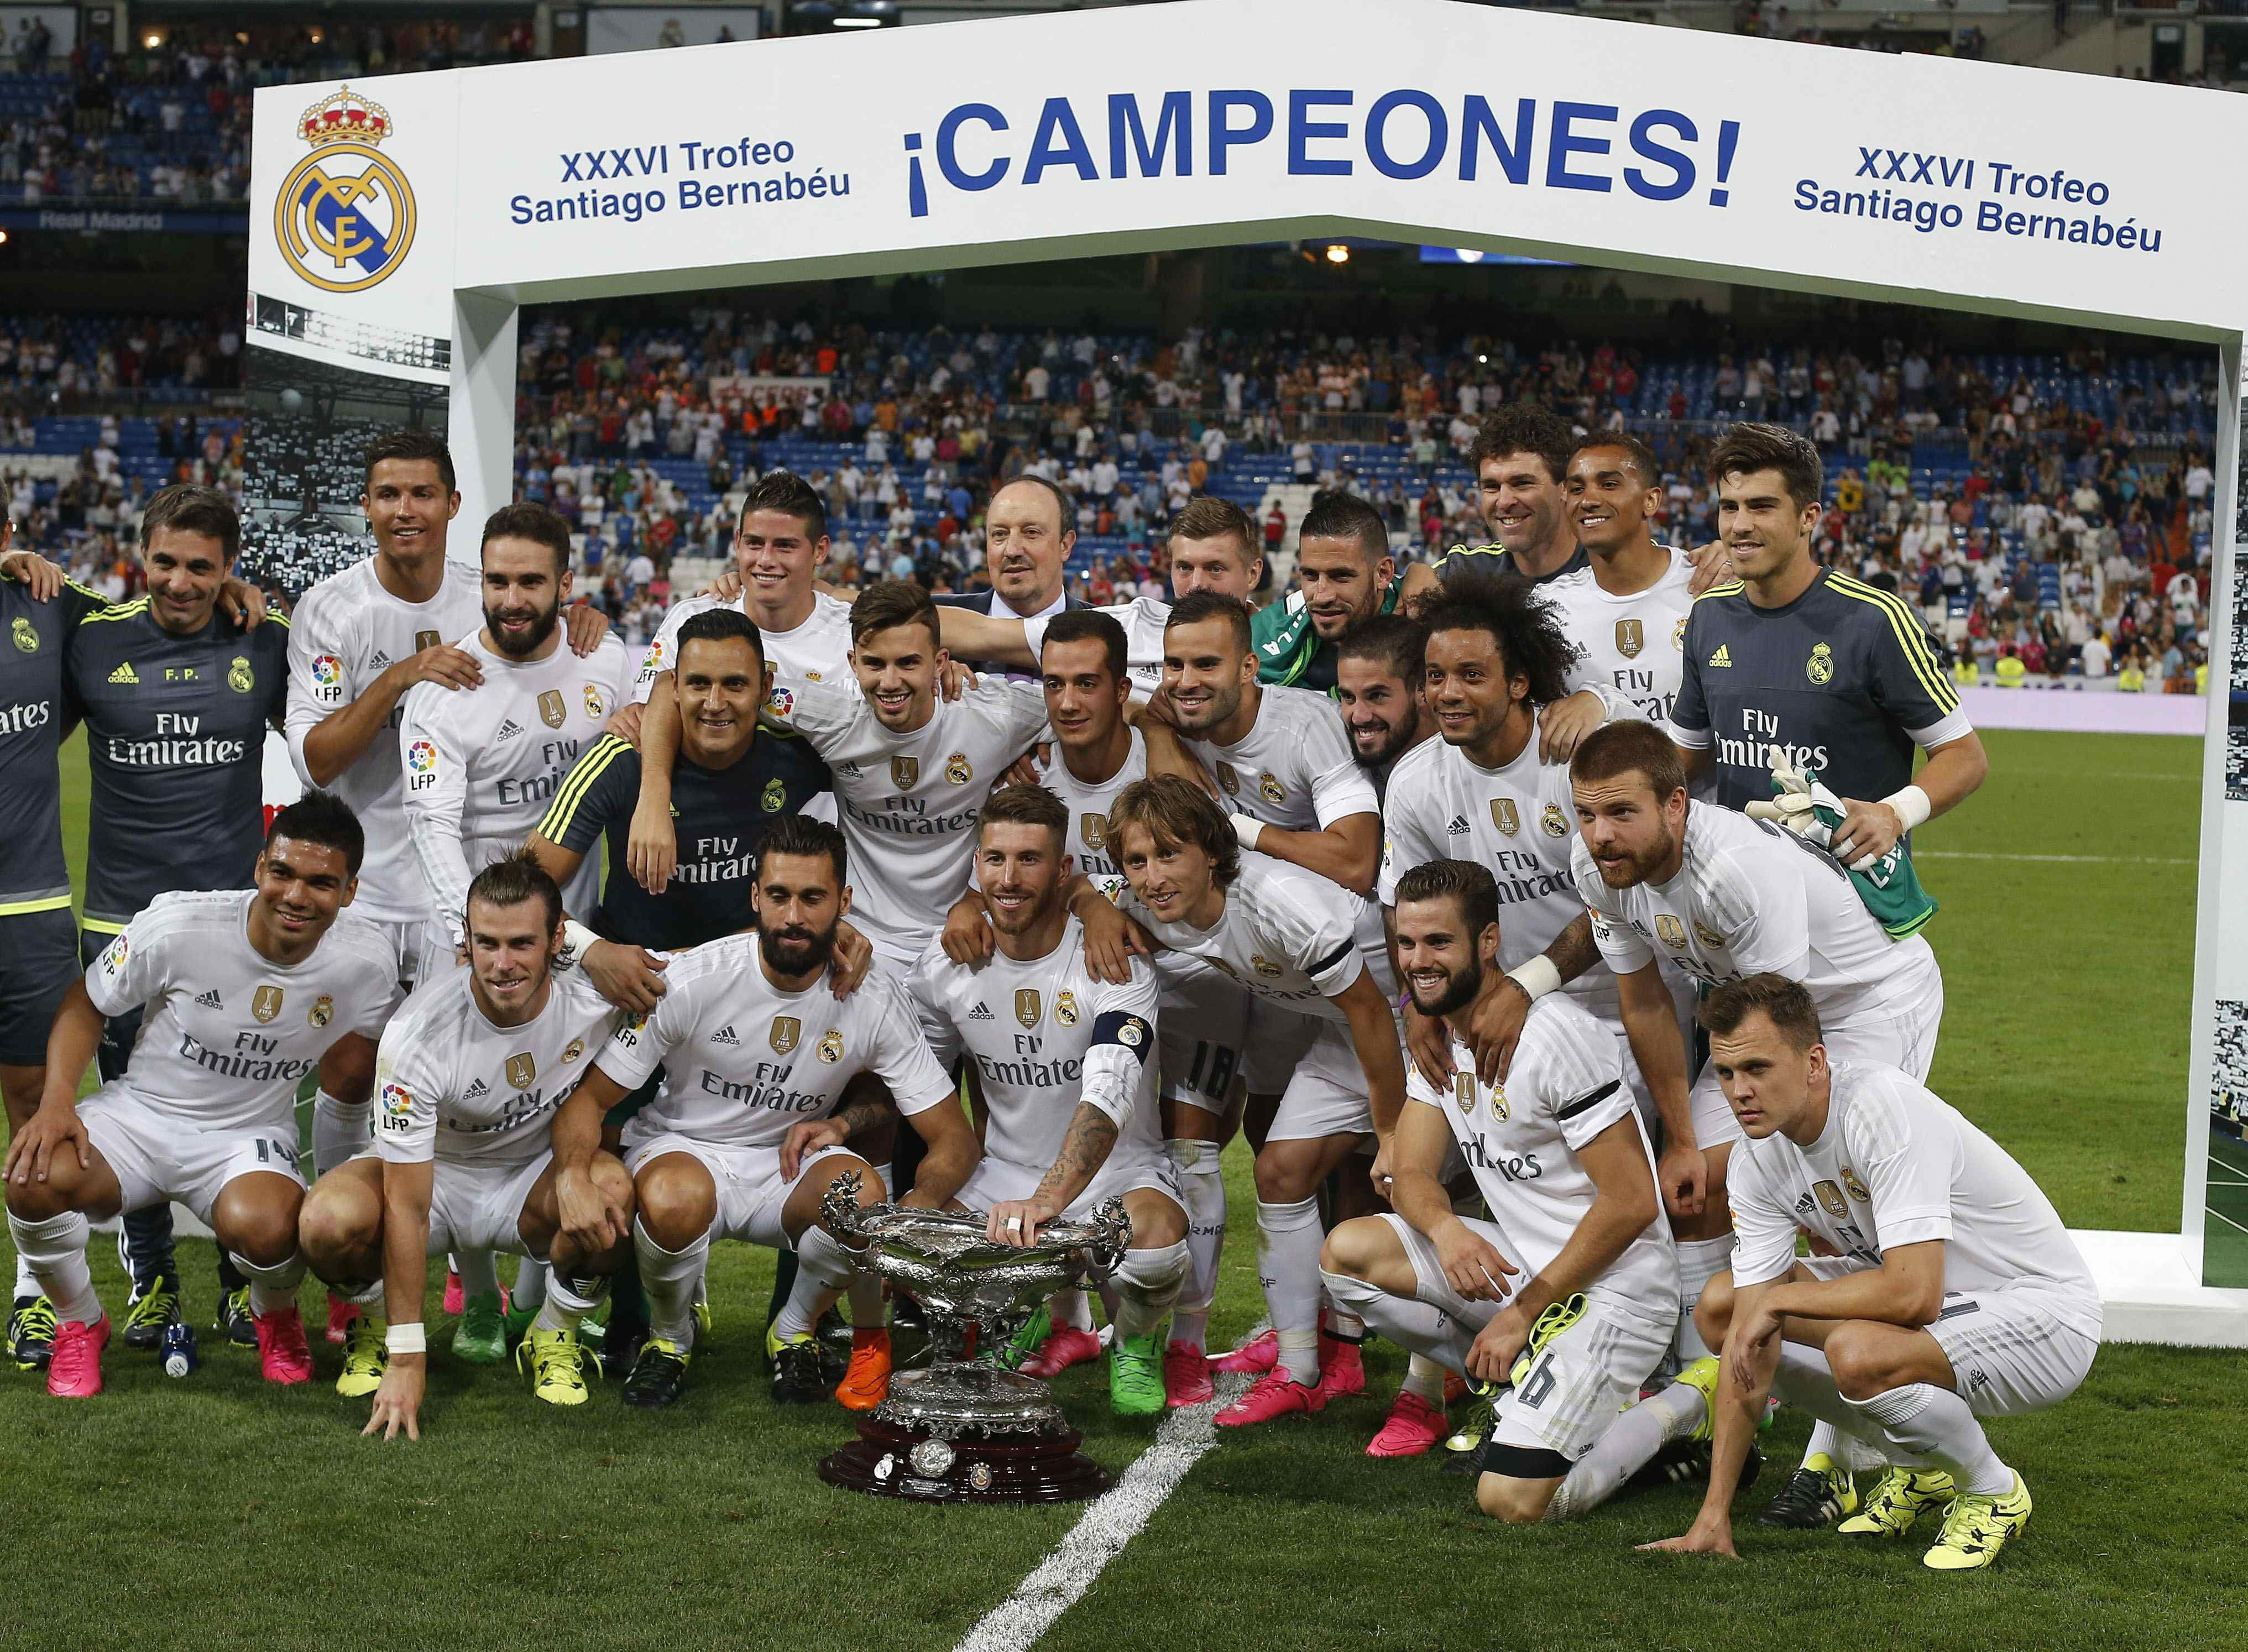 Los jugadores del Real Madrid posan con la copa tras vencer al Galatasaray en el Trofeo Santiago Bernabéu.